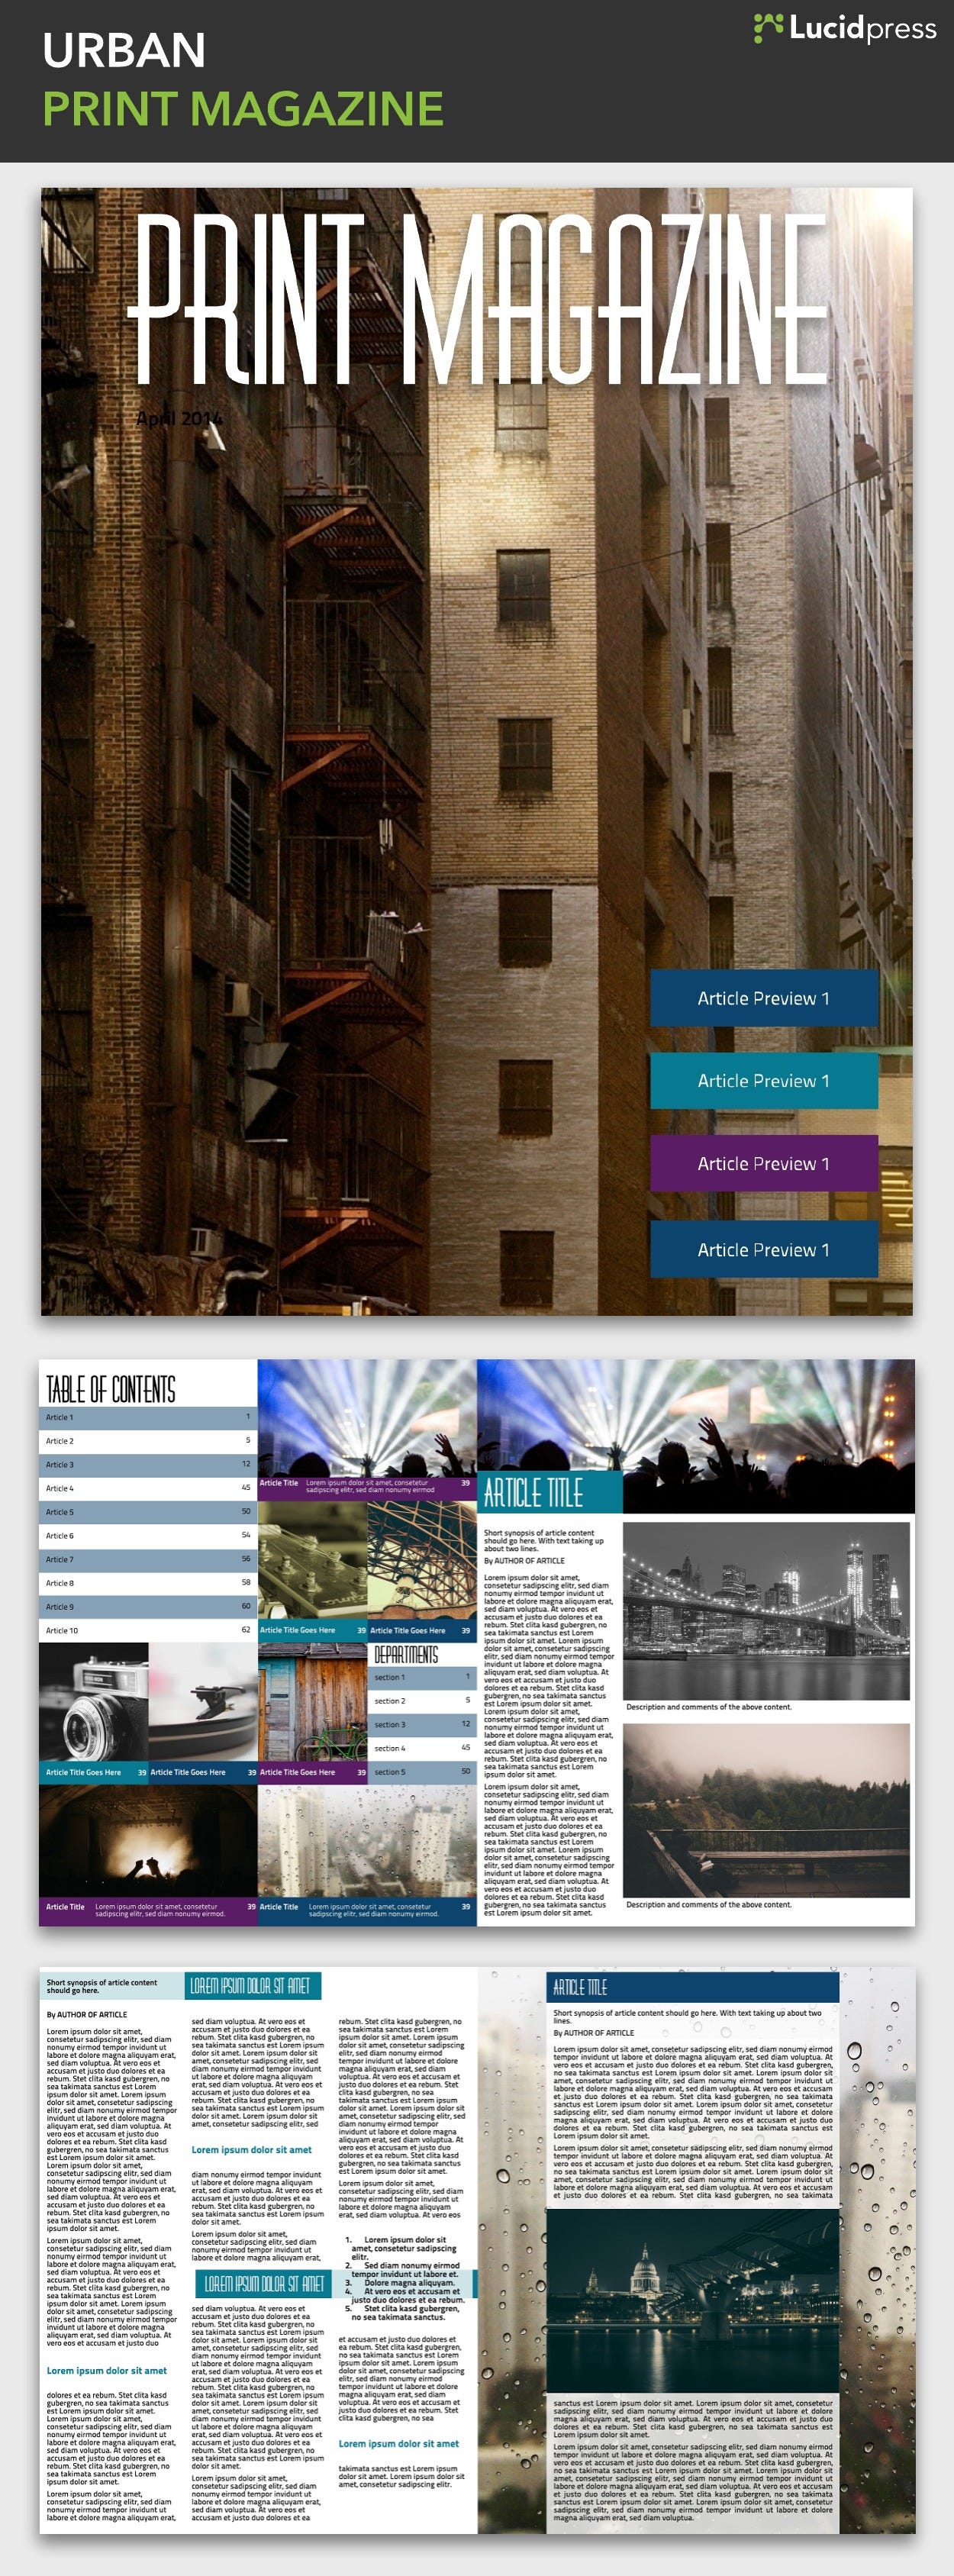 Verwonderlijk 14 magazine layout design ideas for your inspiration VG-89